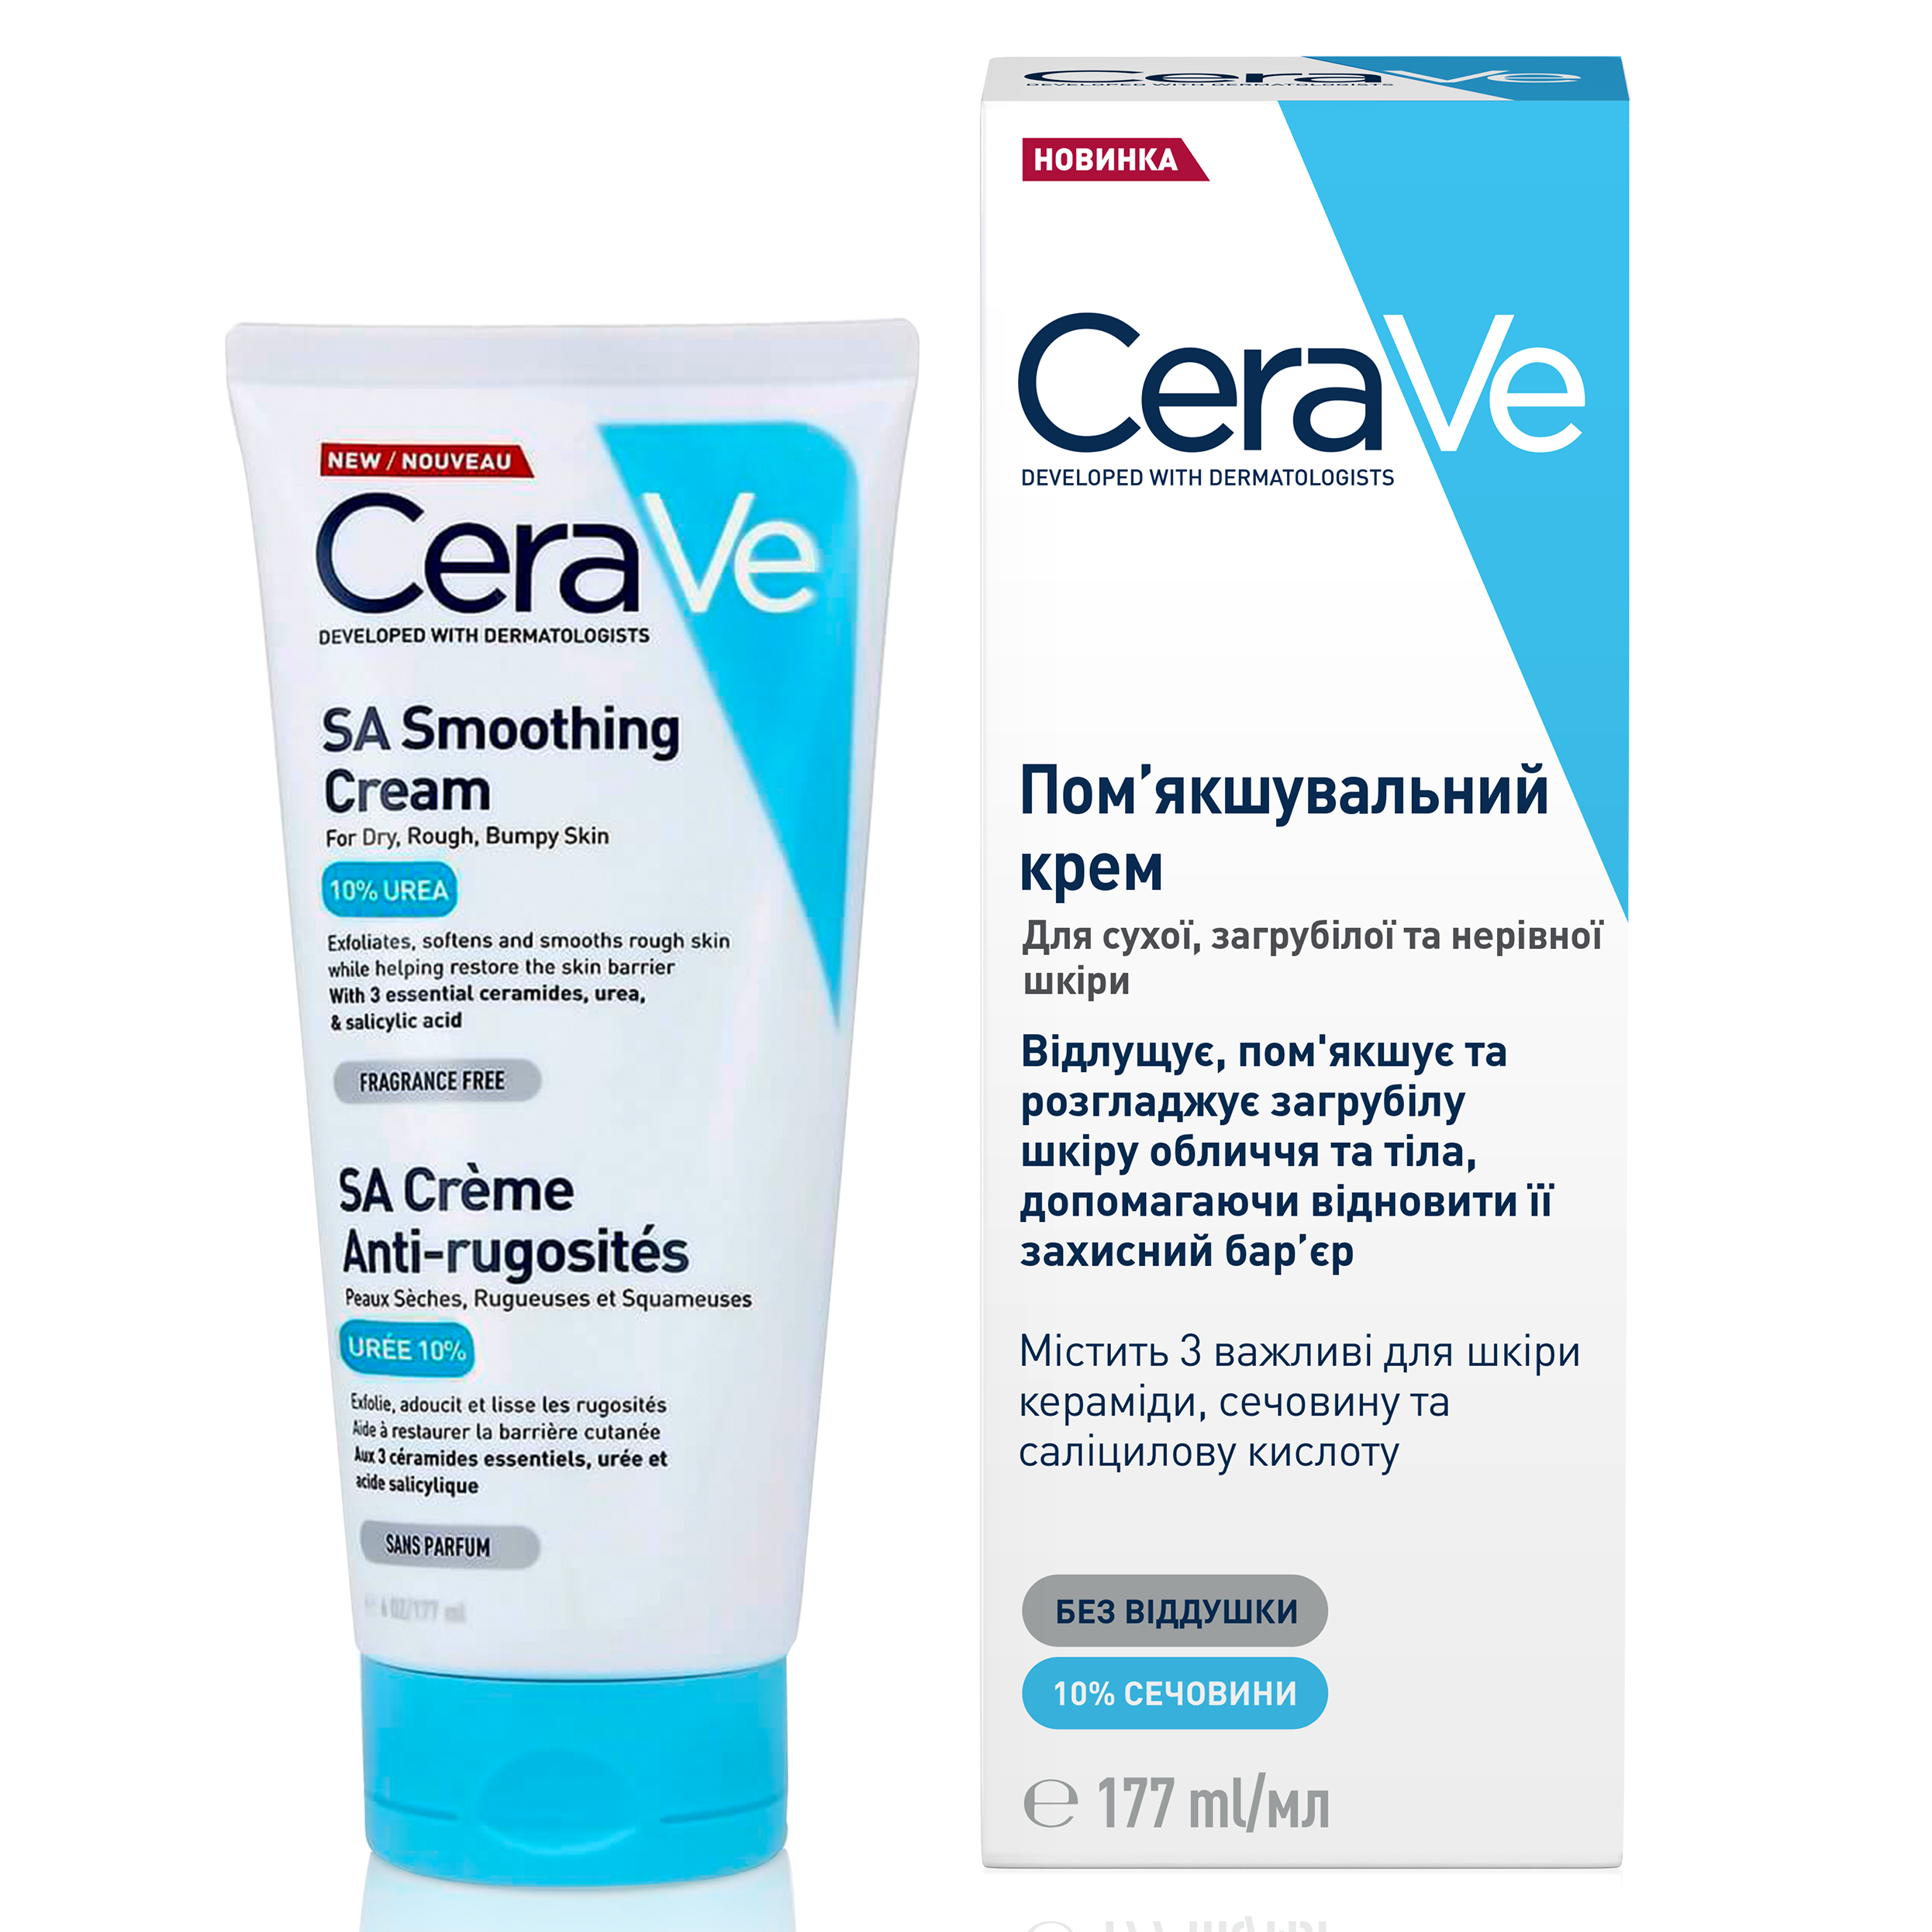 Пом'якшуючий крем CeraVe для сухої, загрубілої та нерівної шкіри обличчя та тіла, 177 мл (MB190800) - фото 2